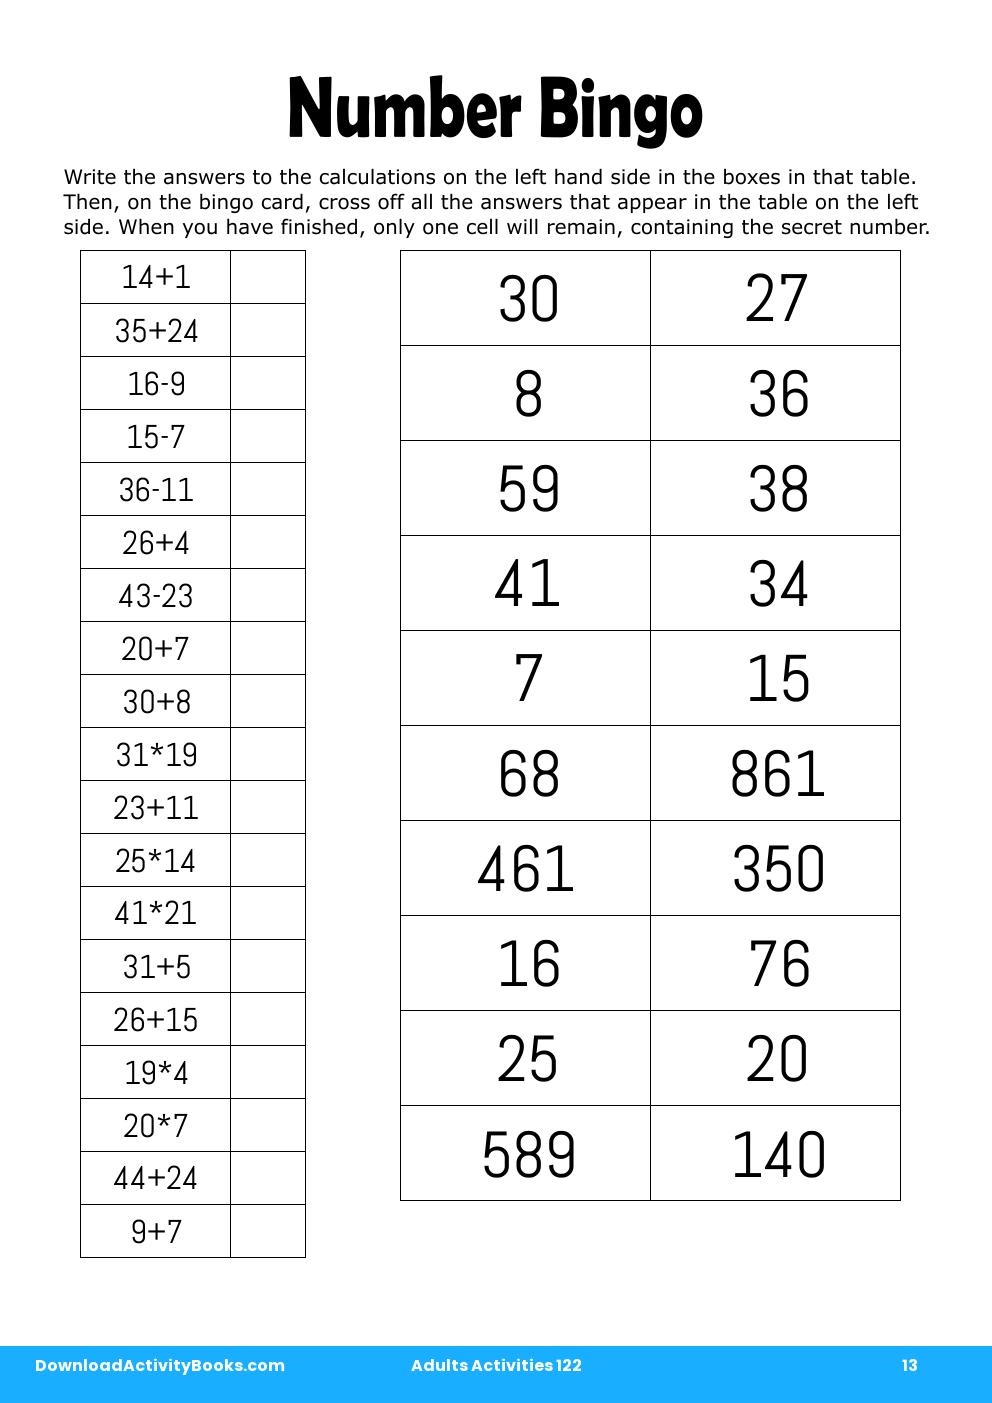 Number Bingo in Adults Activities 122